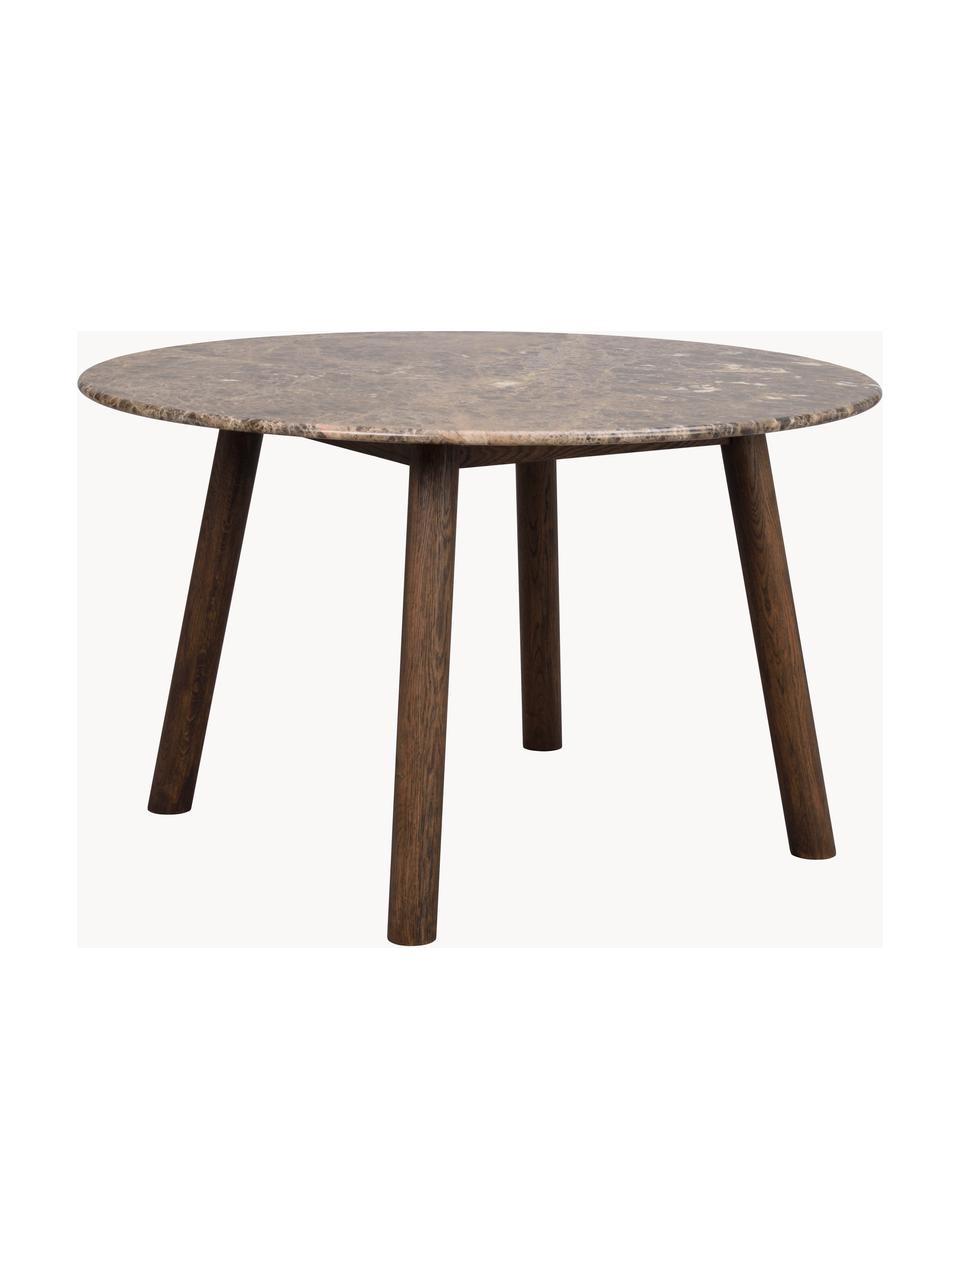 Okrągły stół do jadalni z marmuru Taransay, Blat: marmur, Nogi: drewno dębowe z certyfika, Brązowy, marmurowy, drewno dębowe, Ø 125 x 75 cm